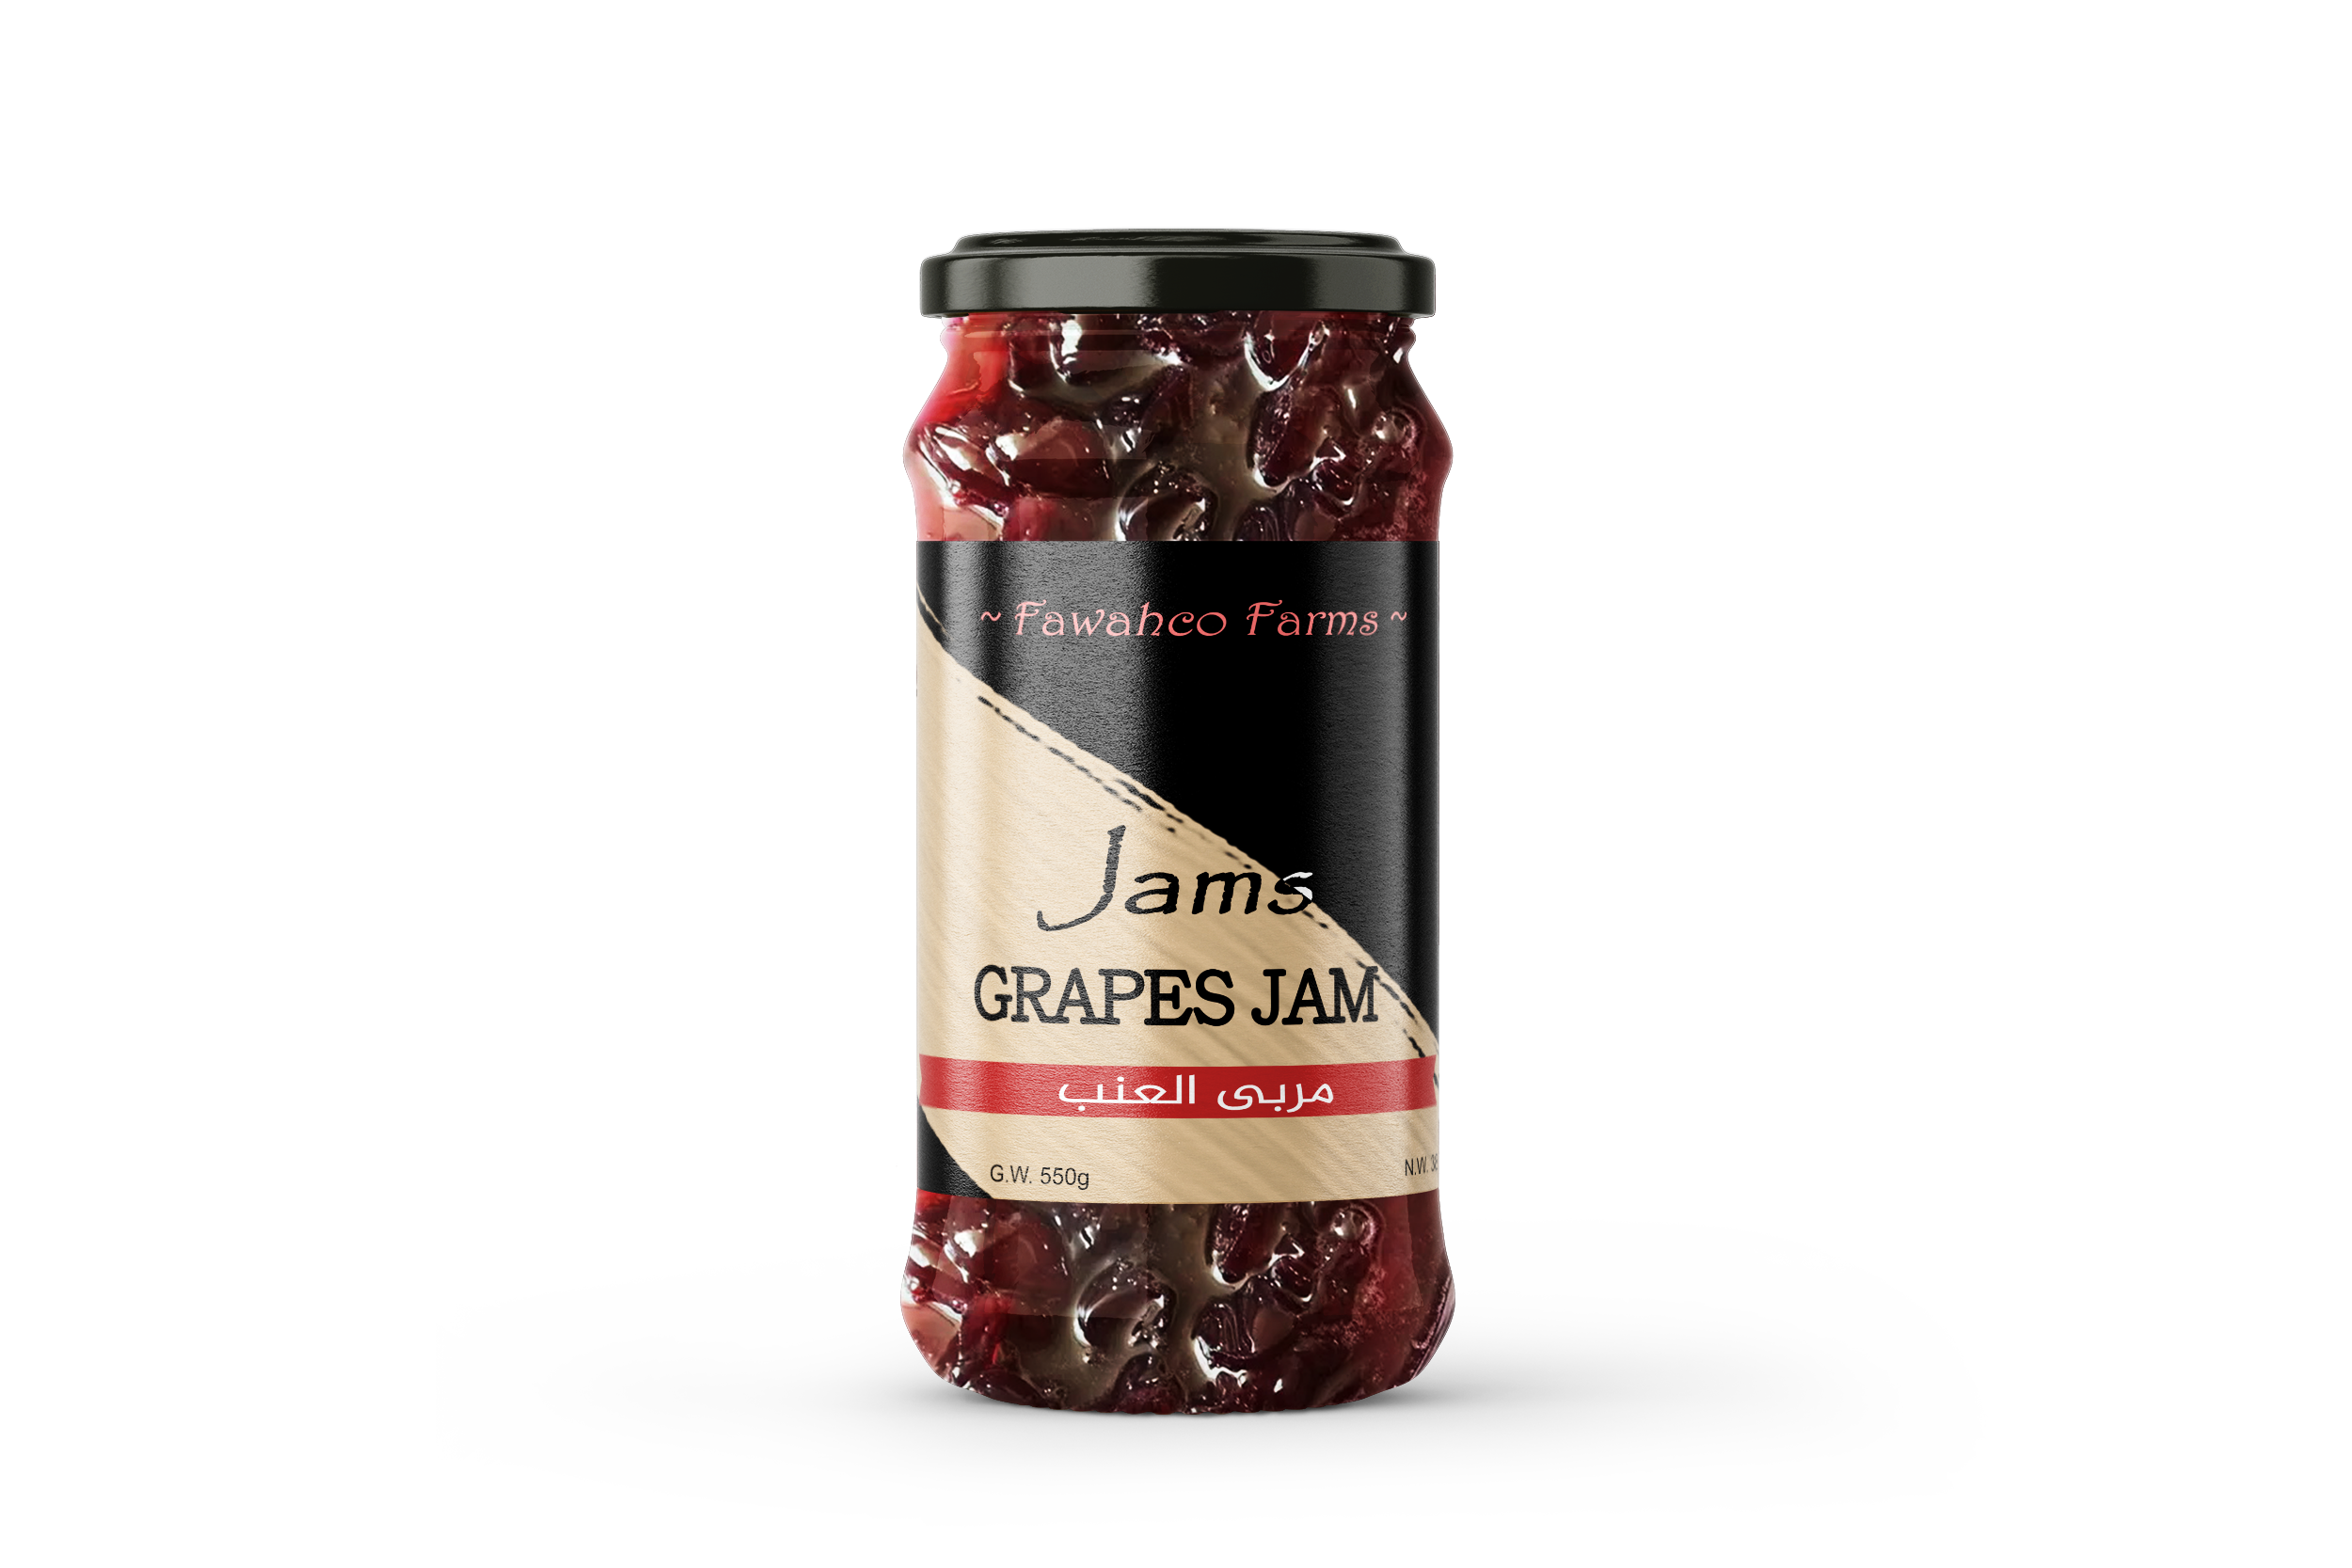 Grapes Jam